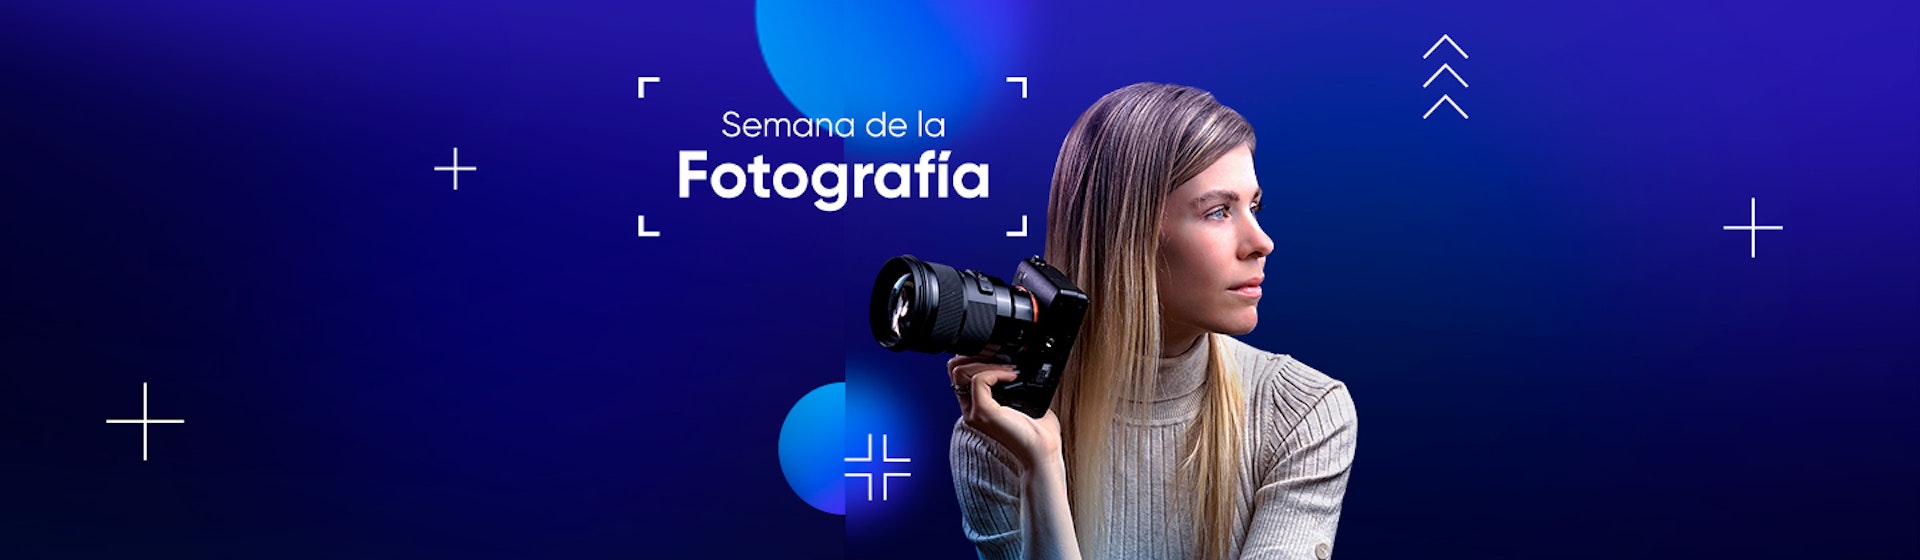 Semana de la Fotografía en Crehana: ¡Premios, cursos y talleres que te convertirán en el más pro y enamorado de la cámara!